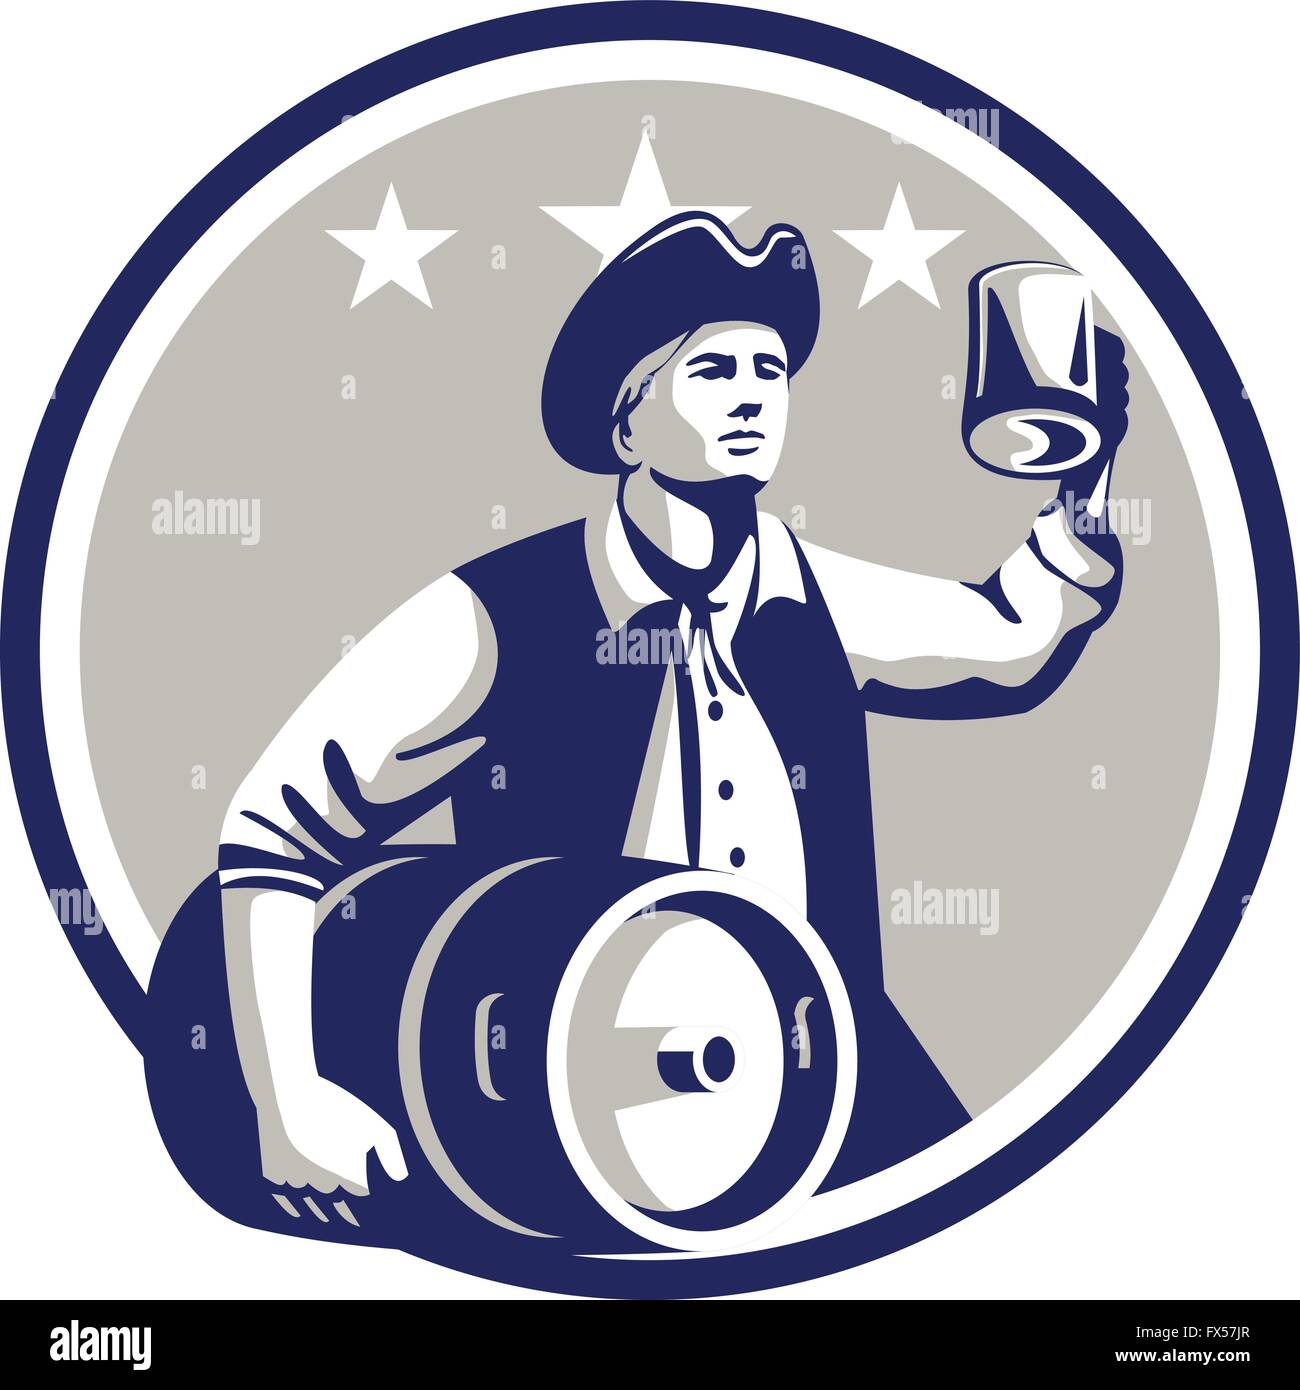 Illustrazione di un American Patriot tenendo un boccale di birra la tostatura mentre trasportano barile di birra insieme all'interno del cerchio con stelle in background fatto in stile retrò. Illustrazione Vettoriale